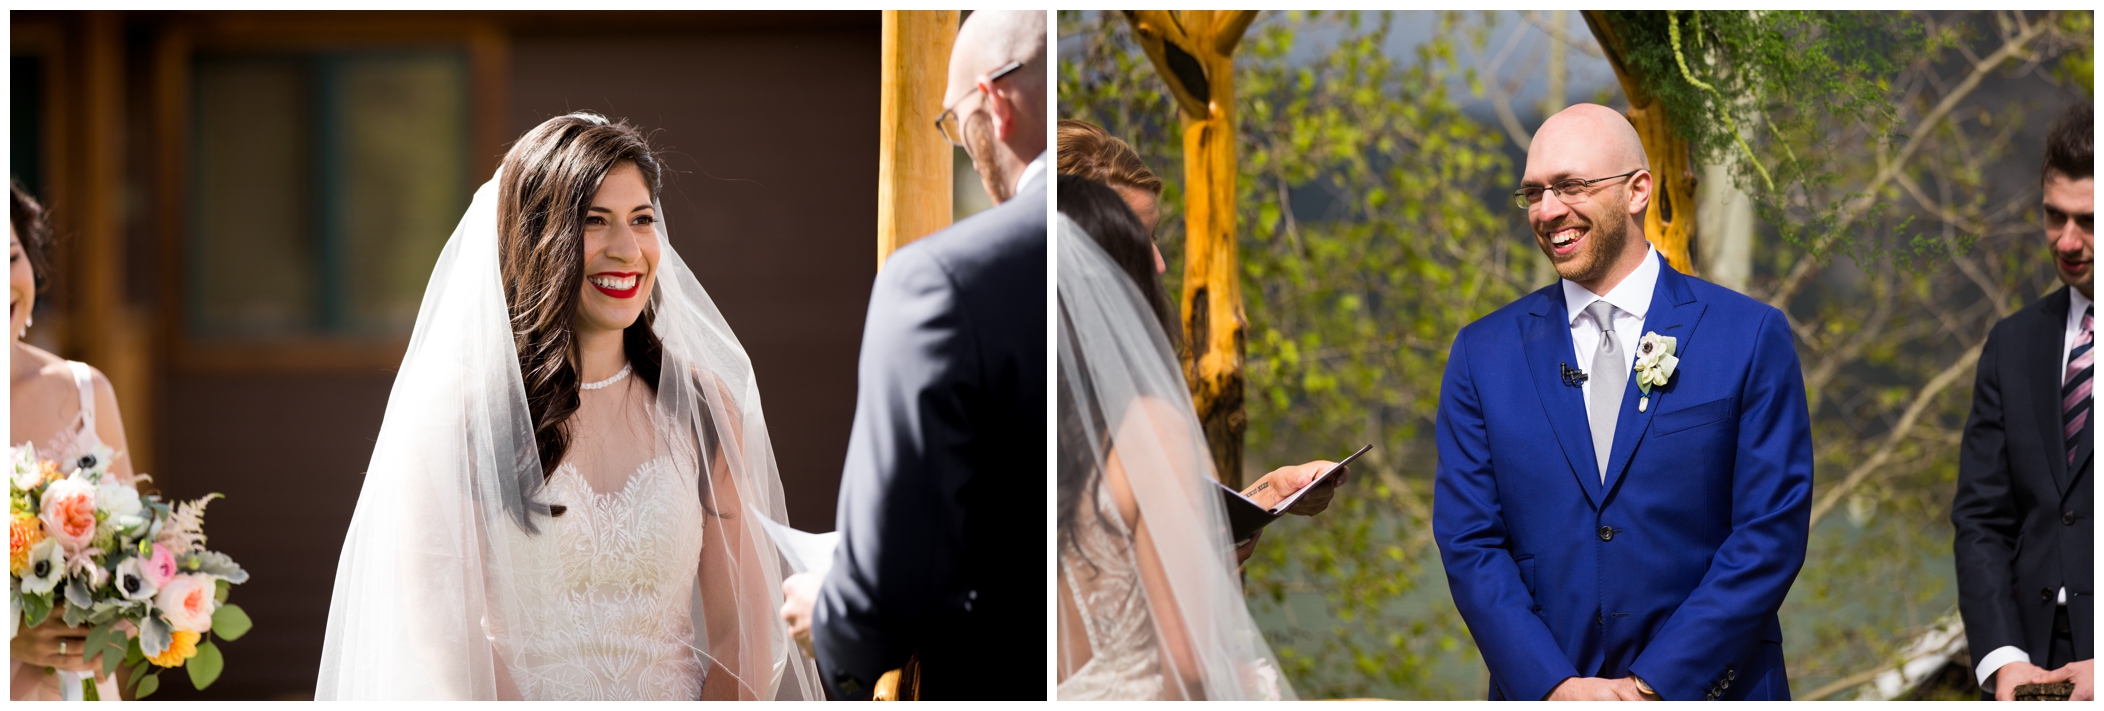 vows at outdoor Colorado wedding ceremony 